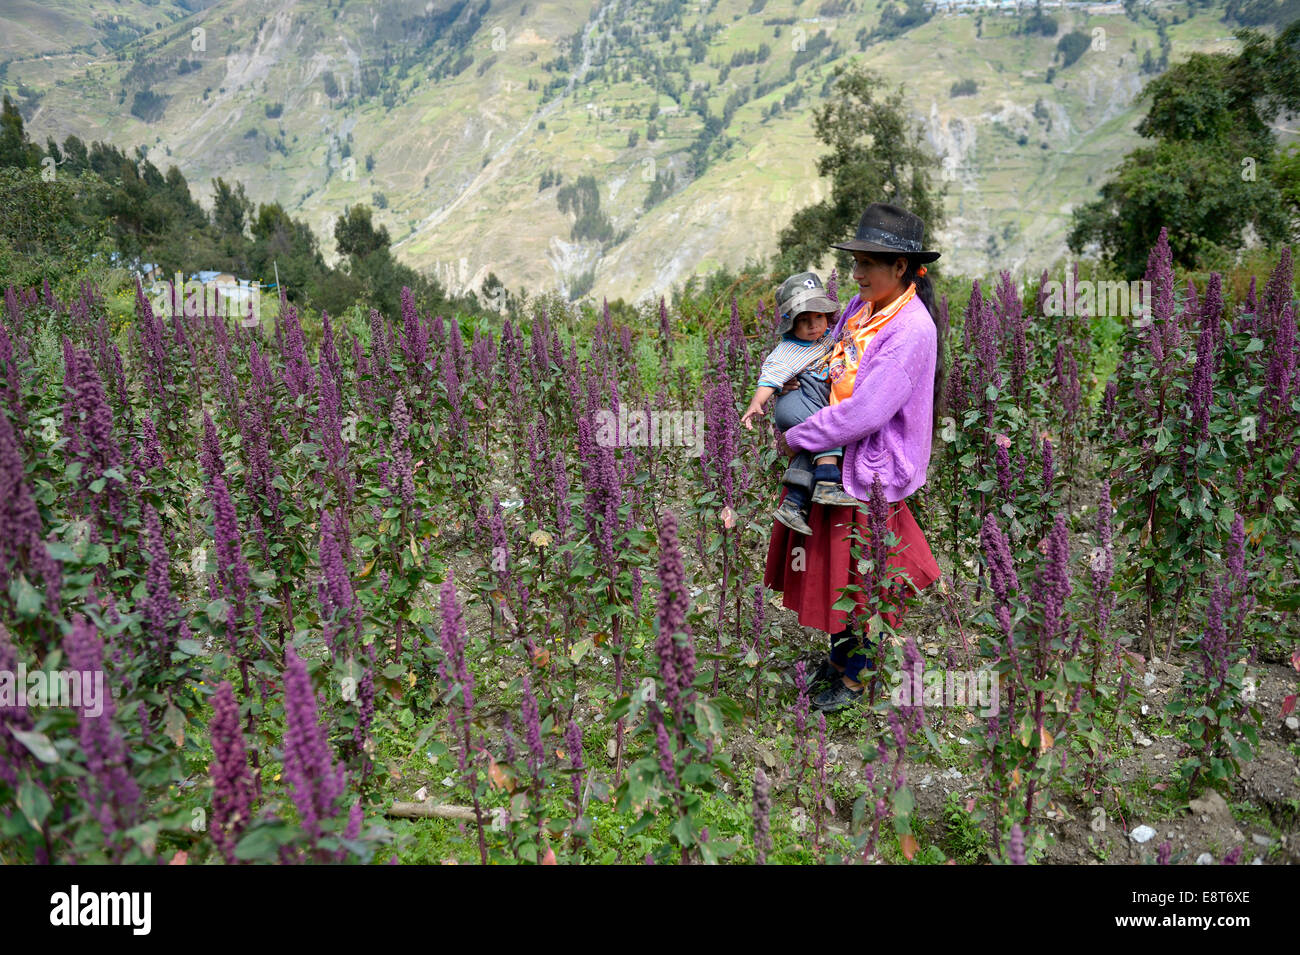 Madre en el tradicional vestido de niño en un campo de quinua (Chenopodium quinoa), Chuquis, provincia de Huanuco, Perú Foto de stock